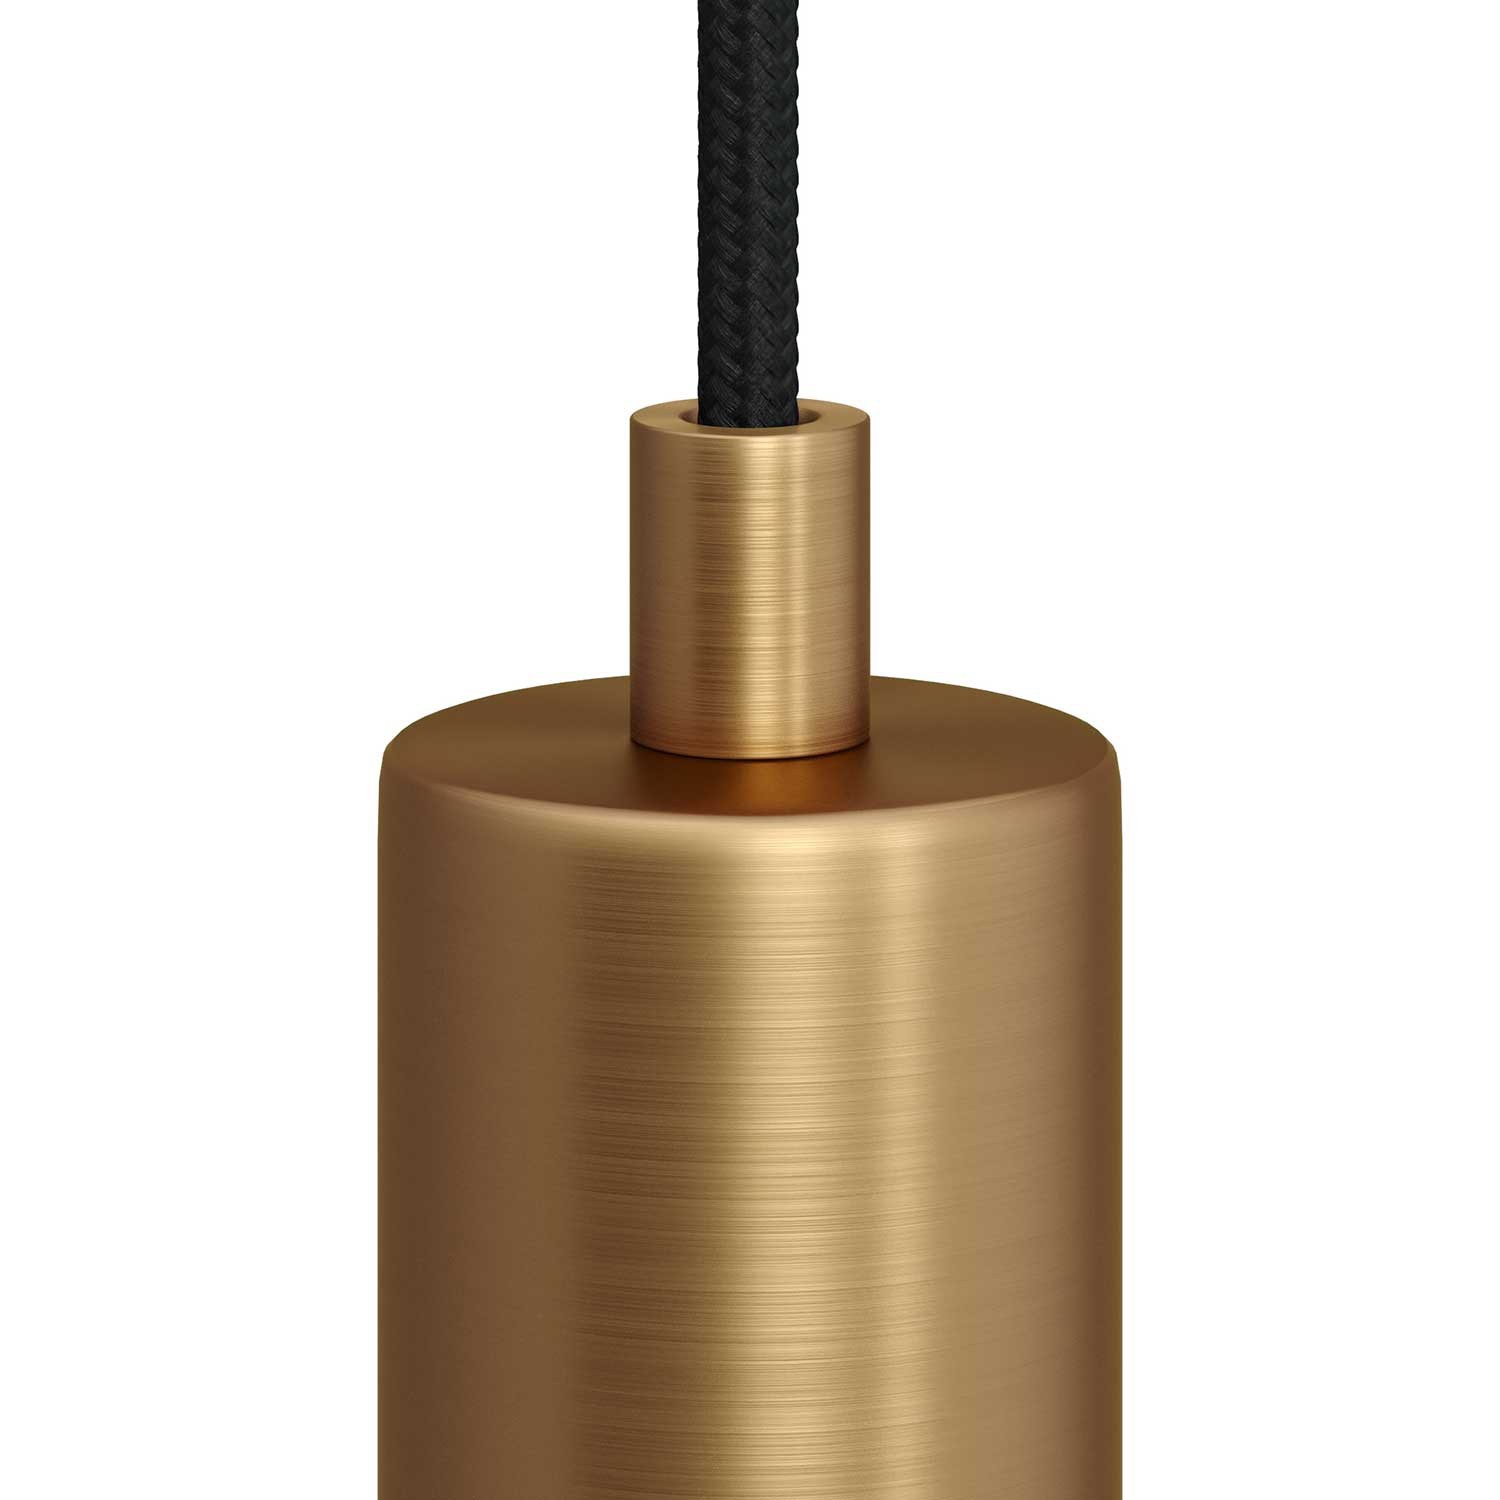 Valcová kovová káblová svorka so závitovou tyčkou, maticou a podložkou -2 pieces